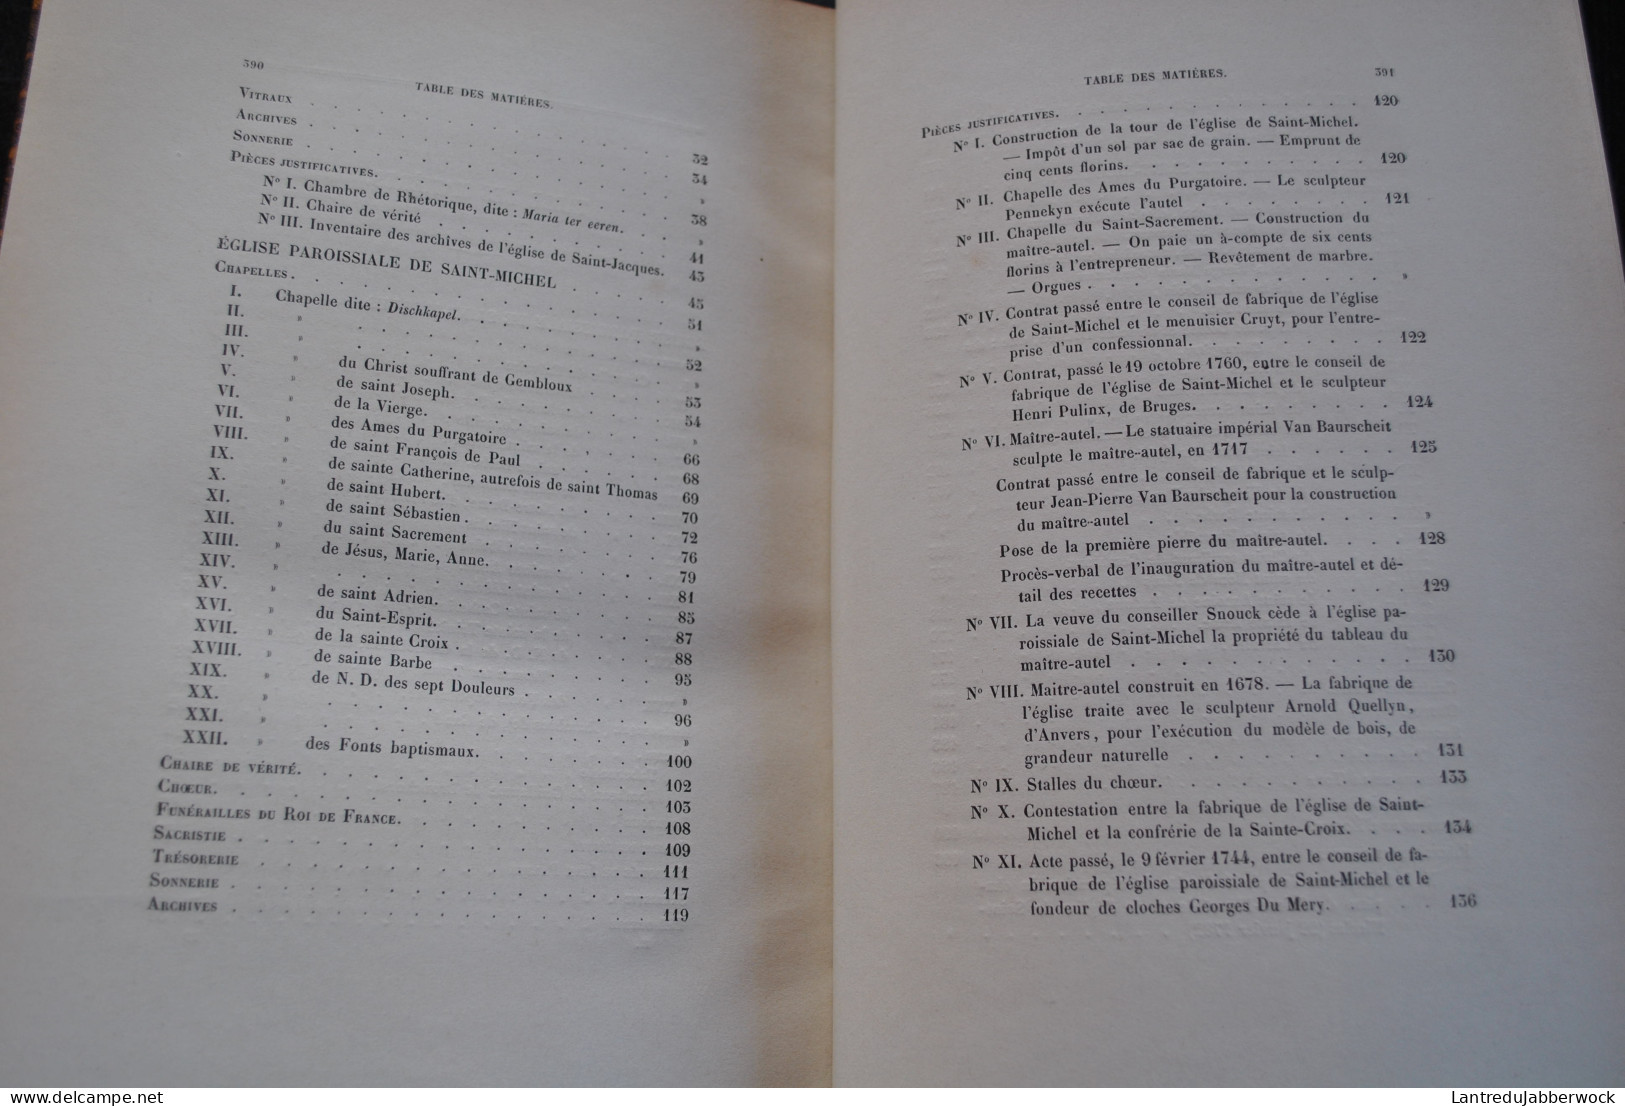 KERVYN DE VOLKAERSBEKE Les églises de Gand Hebbelynck 1857 1858 COMPLET 2 Vol. Eglise cathédrale de Saint-Bavon RARE EO